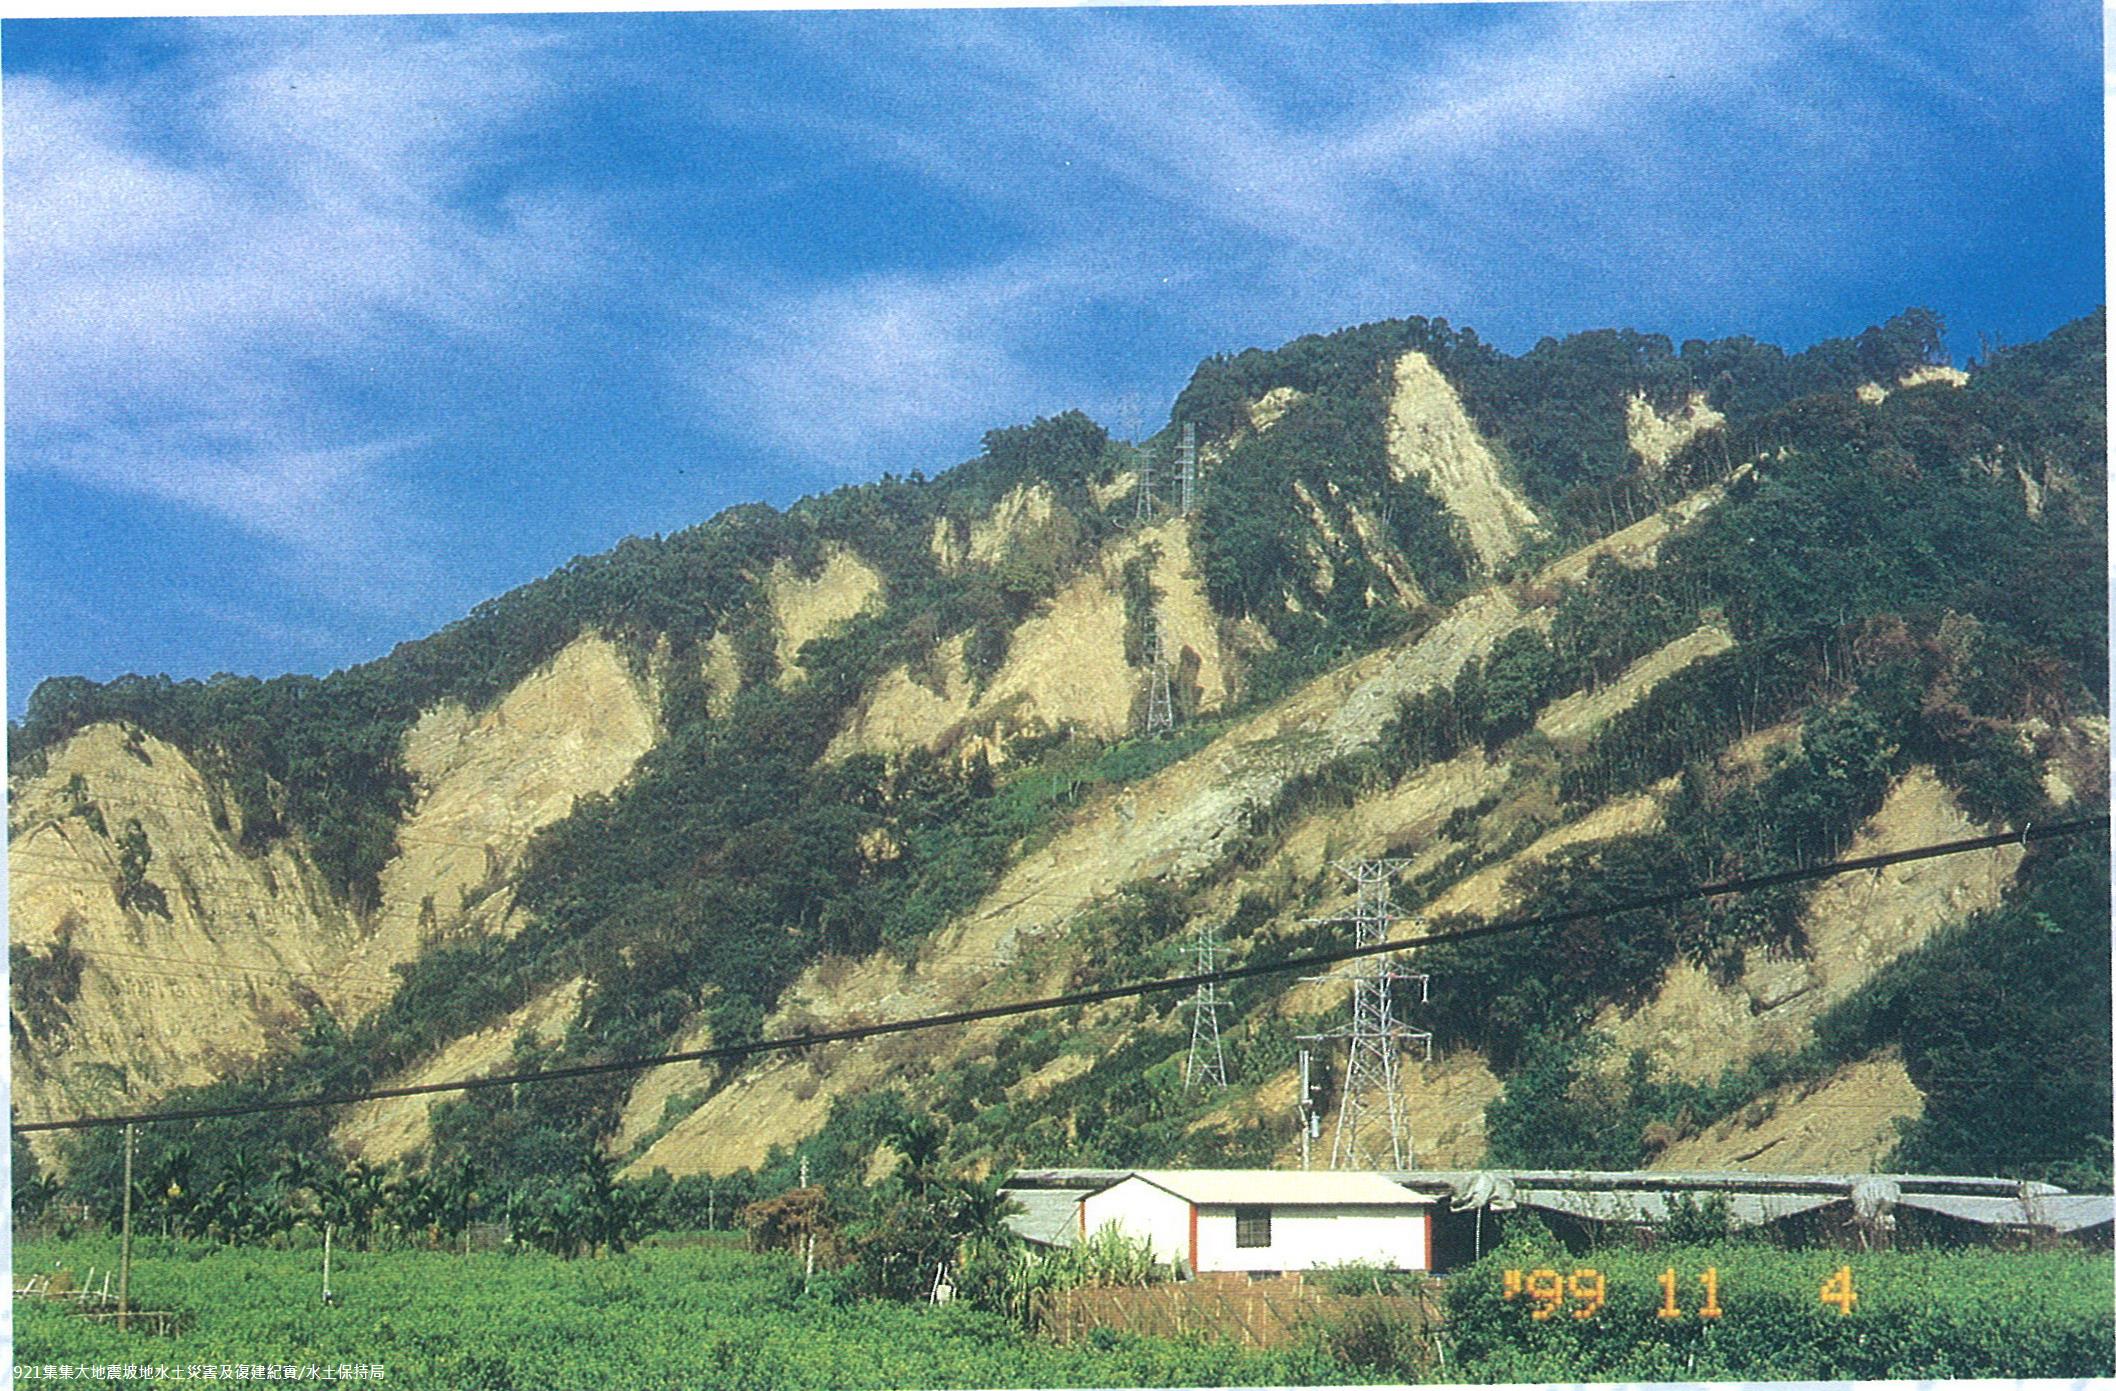 照片15 苗栗縣卓蘭鎮白布帆地區坡地崩塌，並於2001年桃芝颱風期間爆發土石流(水土保持局)